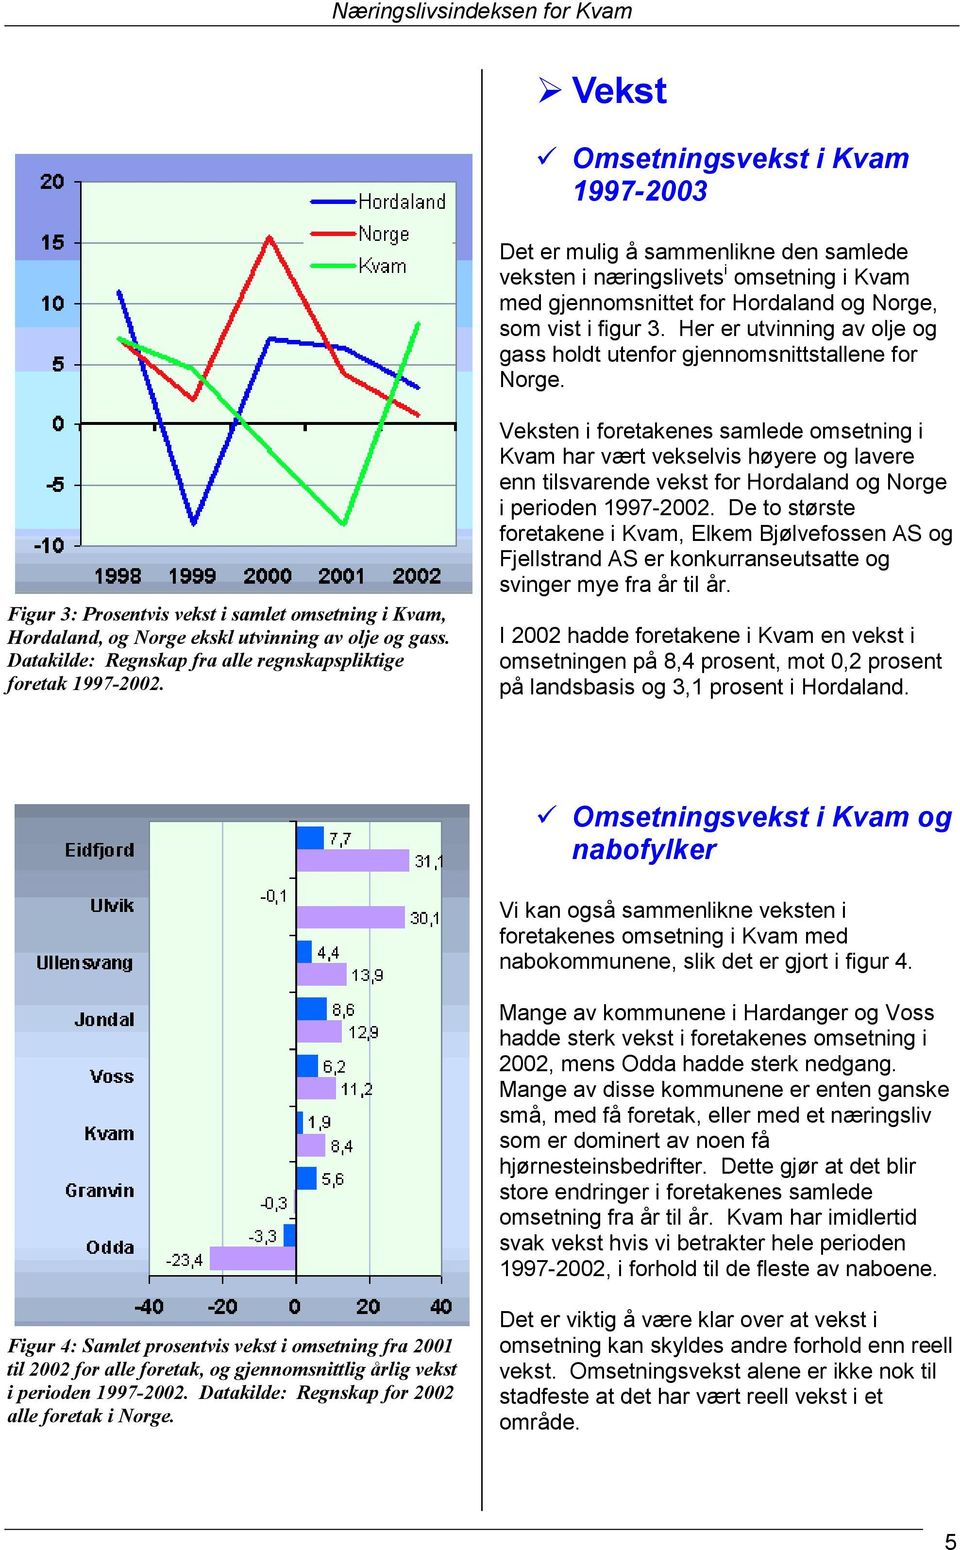 Datakilde: Regnskap fra alle regnskapspliktige foretak 1997-2002.